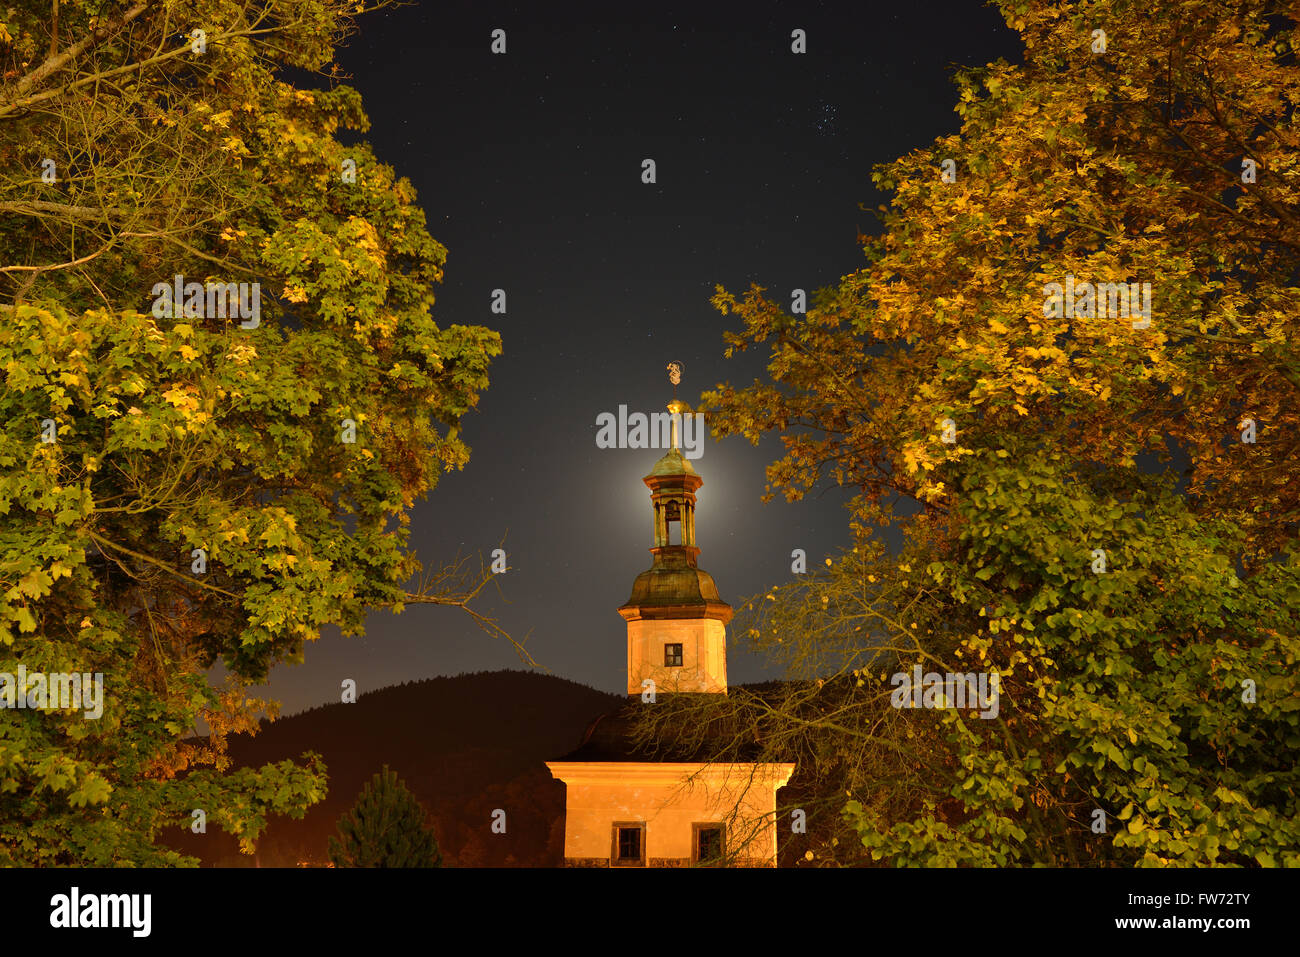 Iglesia y follaje iluminado por luces de calle con la luna detrás del campanario. Loket, Distrito Sokolov, Bohemia, República Checa. Foto de stock